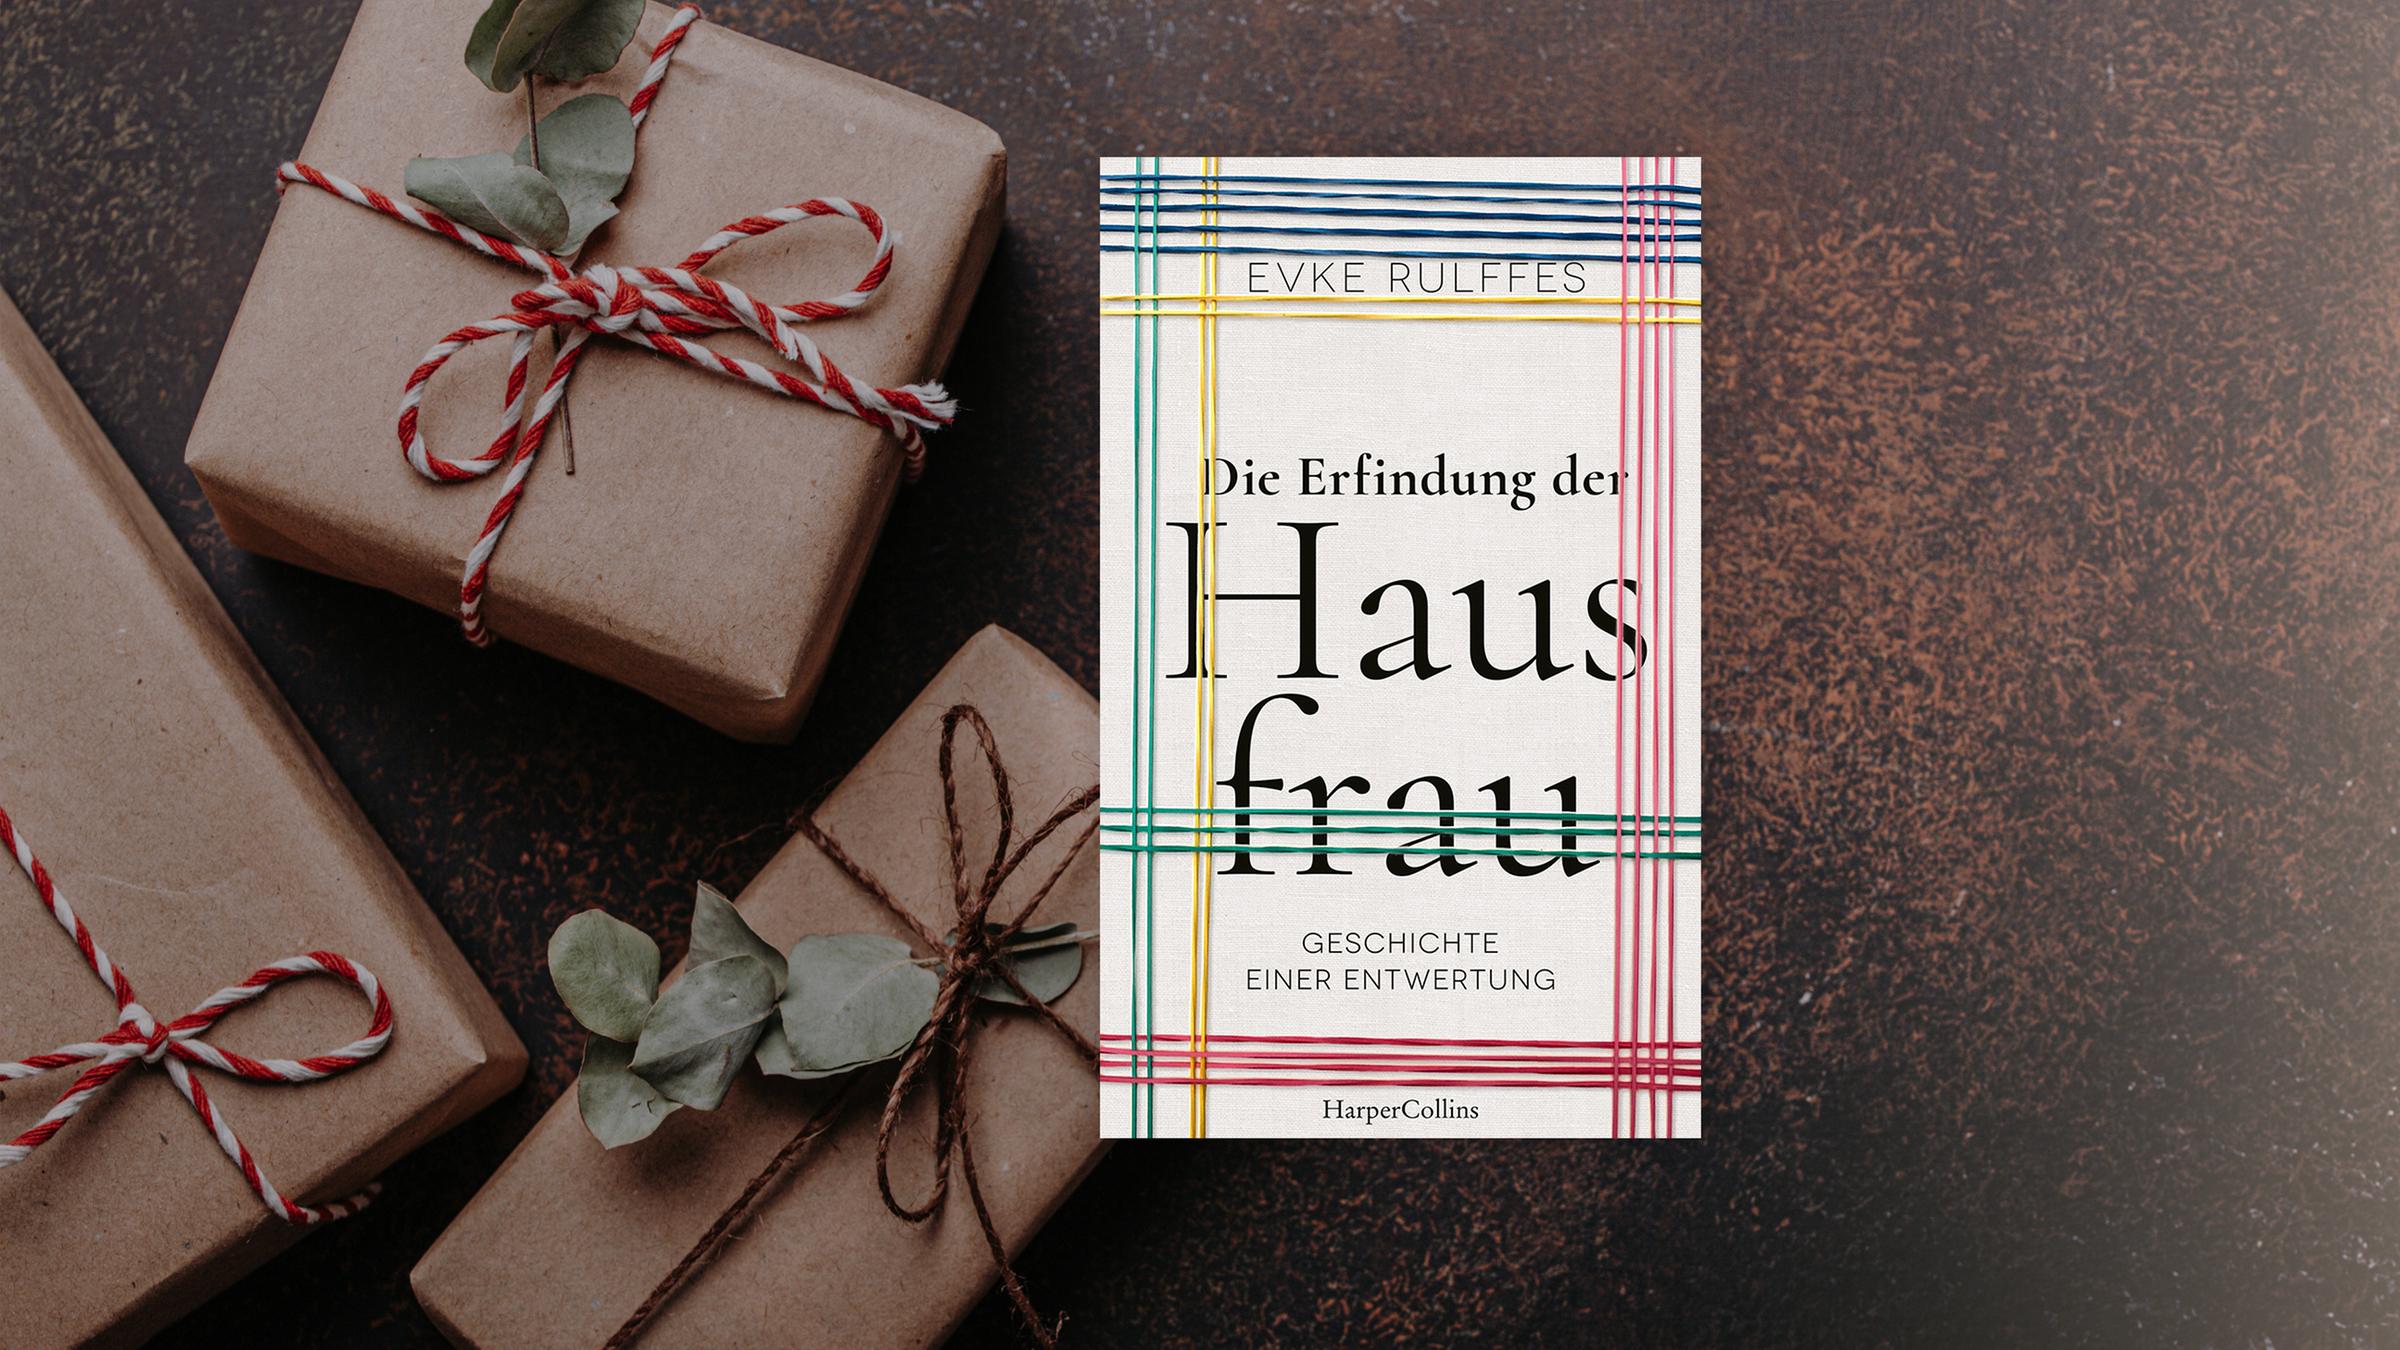 Buchcover zu Evke Rulffes "Die Erfindung der Hausfrau". Im Hi...</p>

                        <a href=